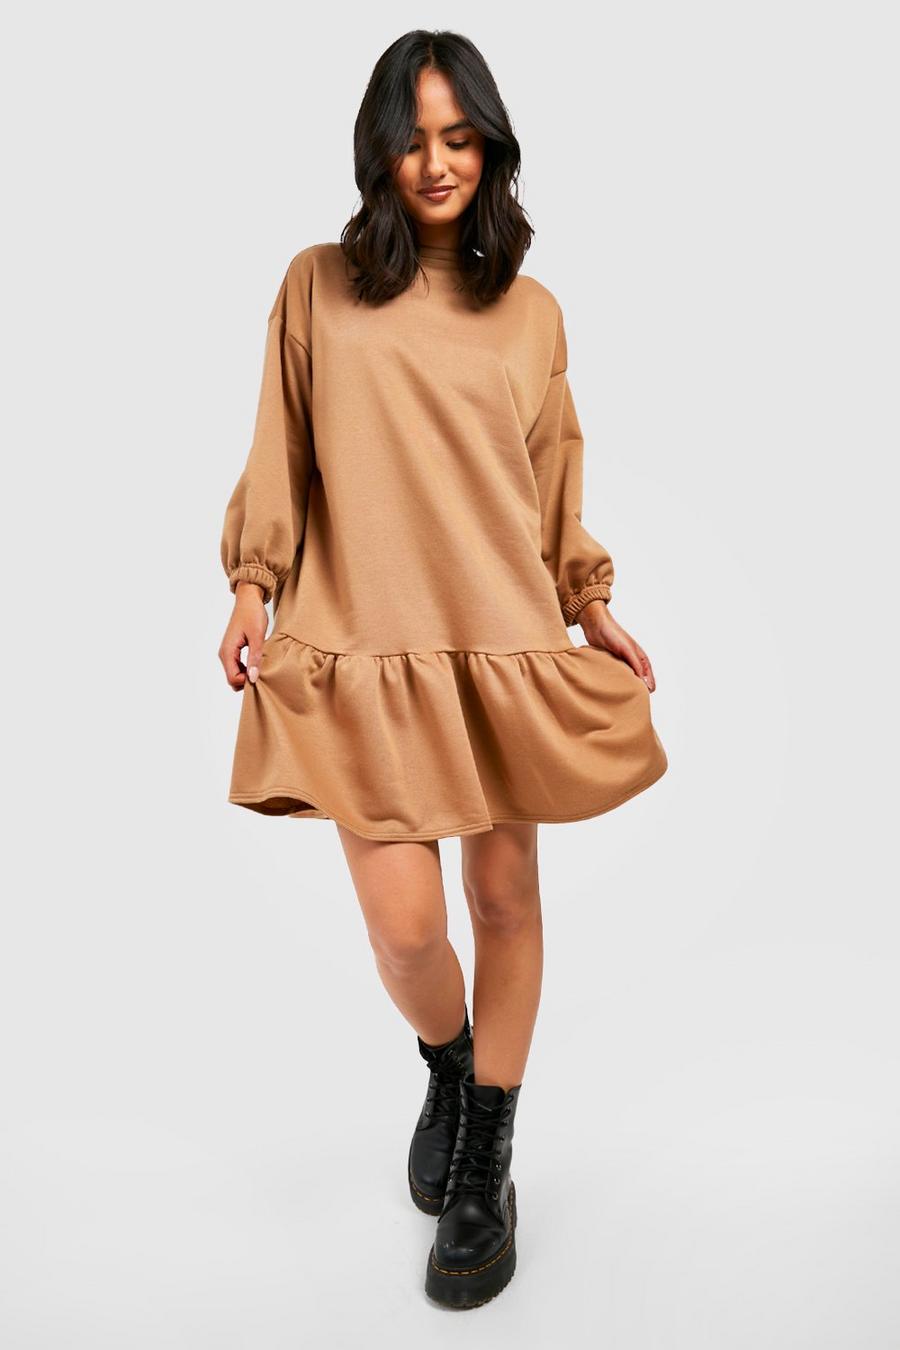 Comma Peplum jurk geruite print elegant Mode Jurken Peplum jurken 